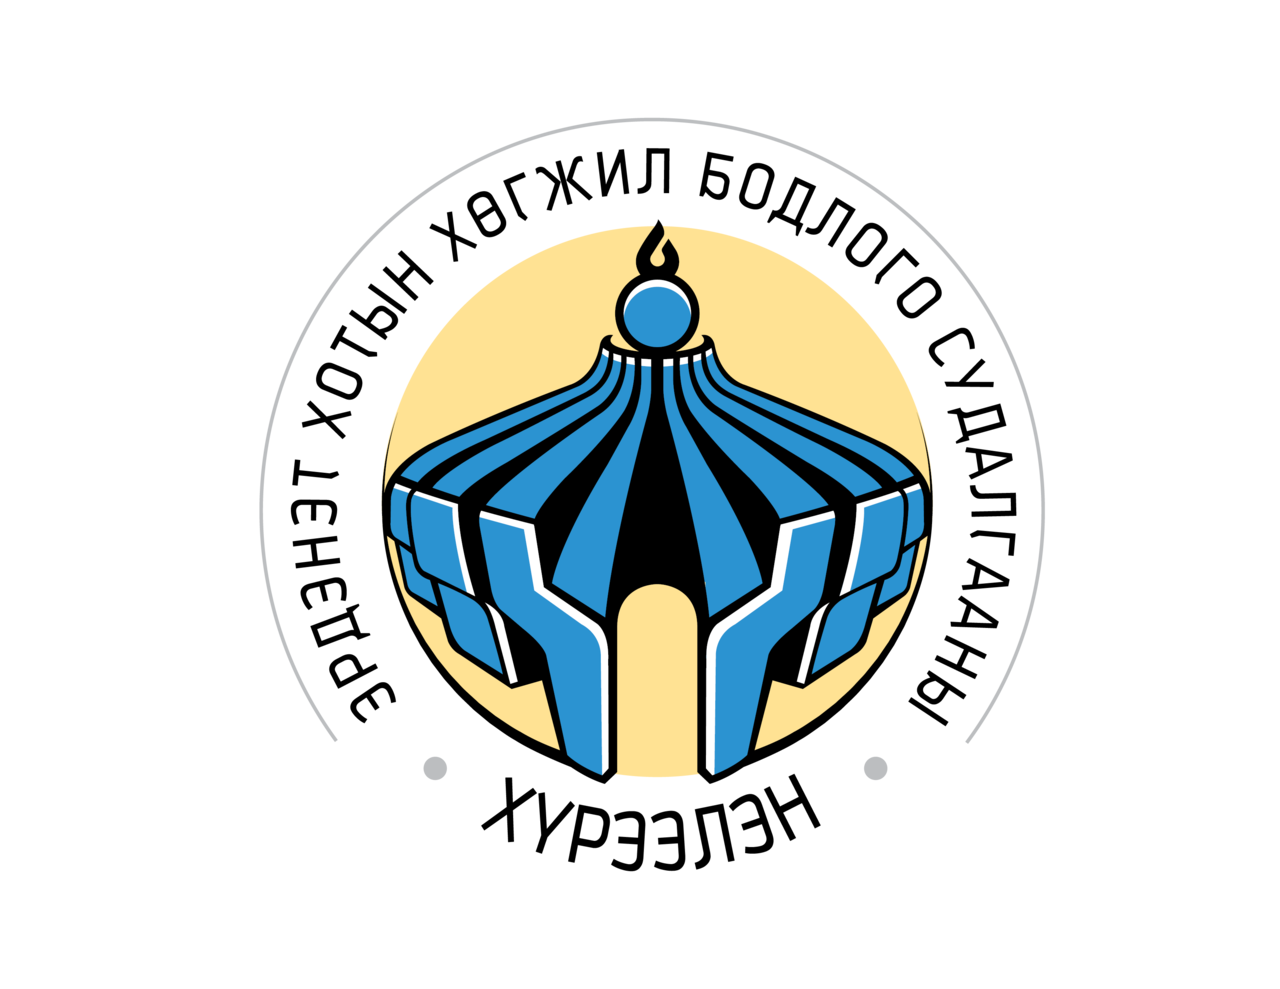 Erdenet logo1.png